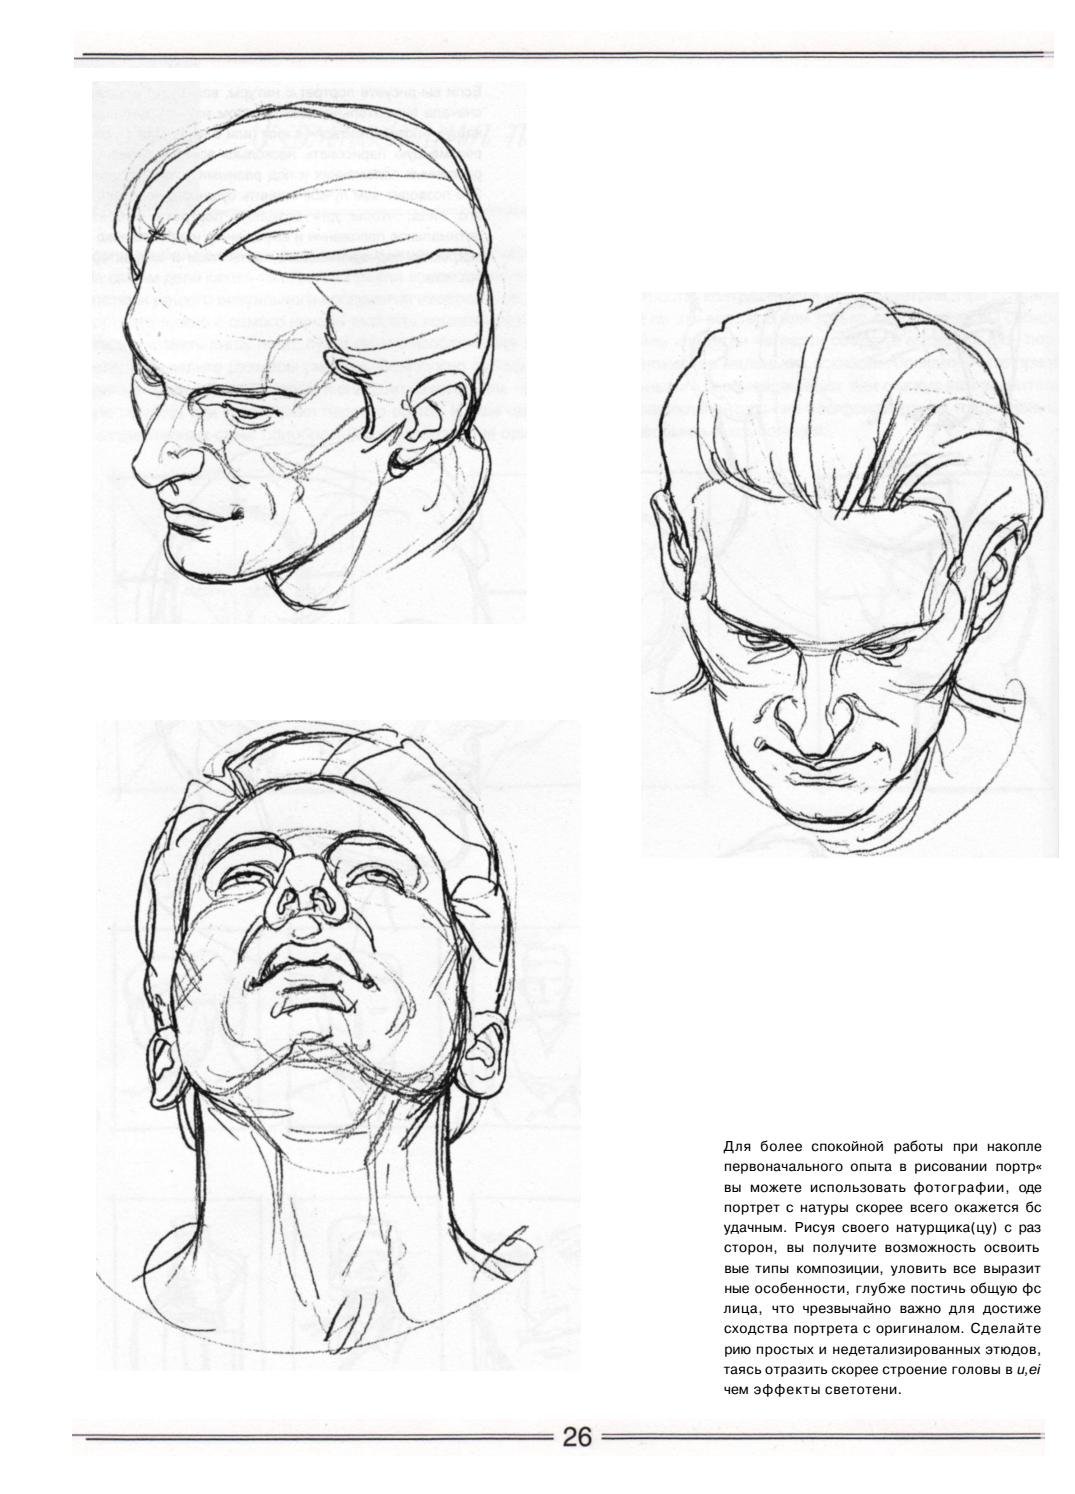 Зарисовки головы человека в разных ракурсах